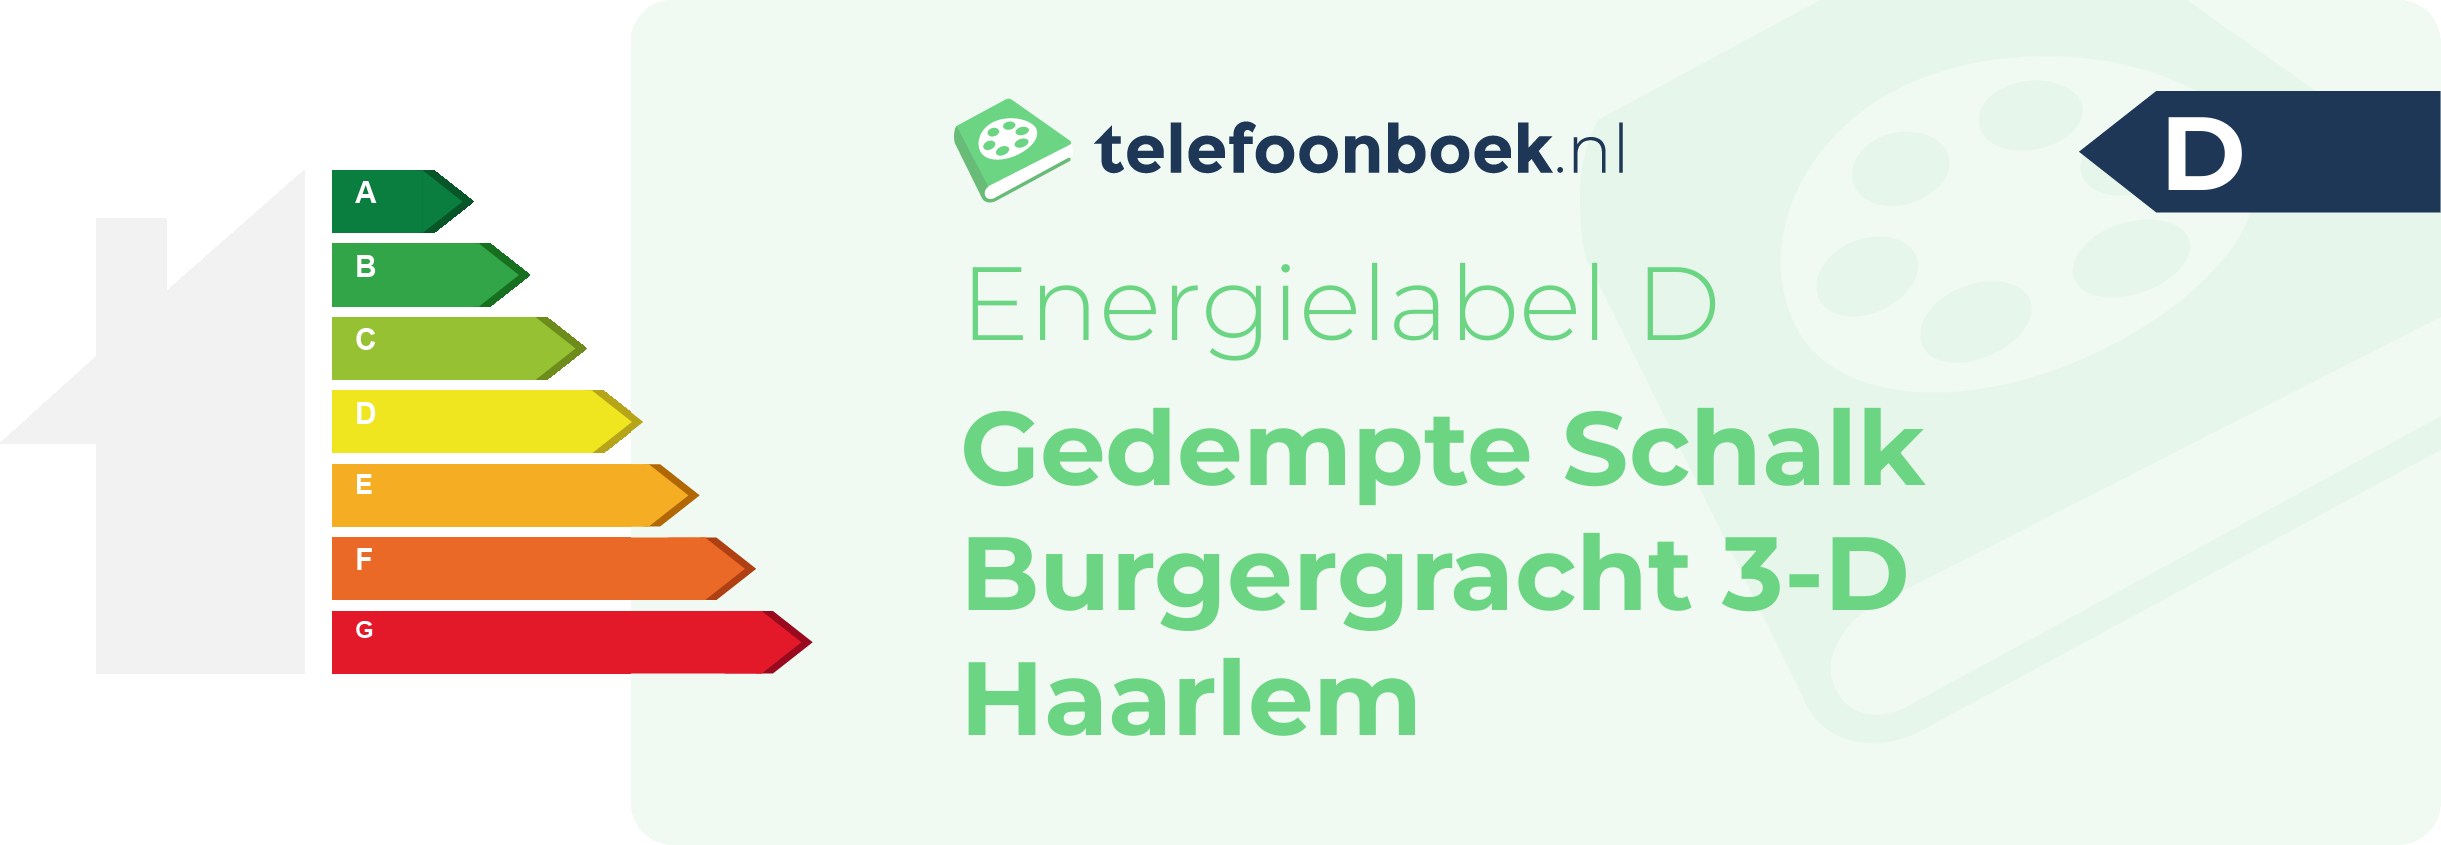 Energielabel Gedempte Schalk Burgergracht 3-D Haarlem